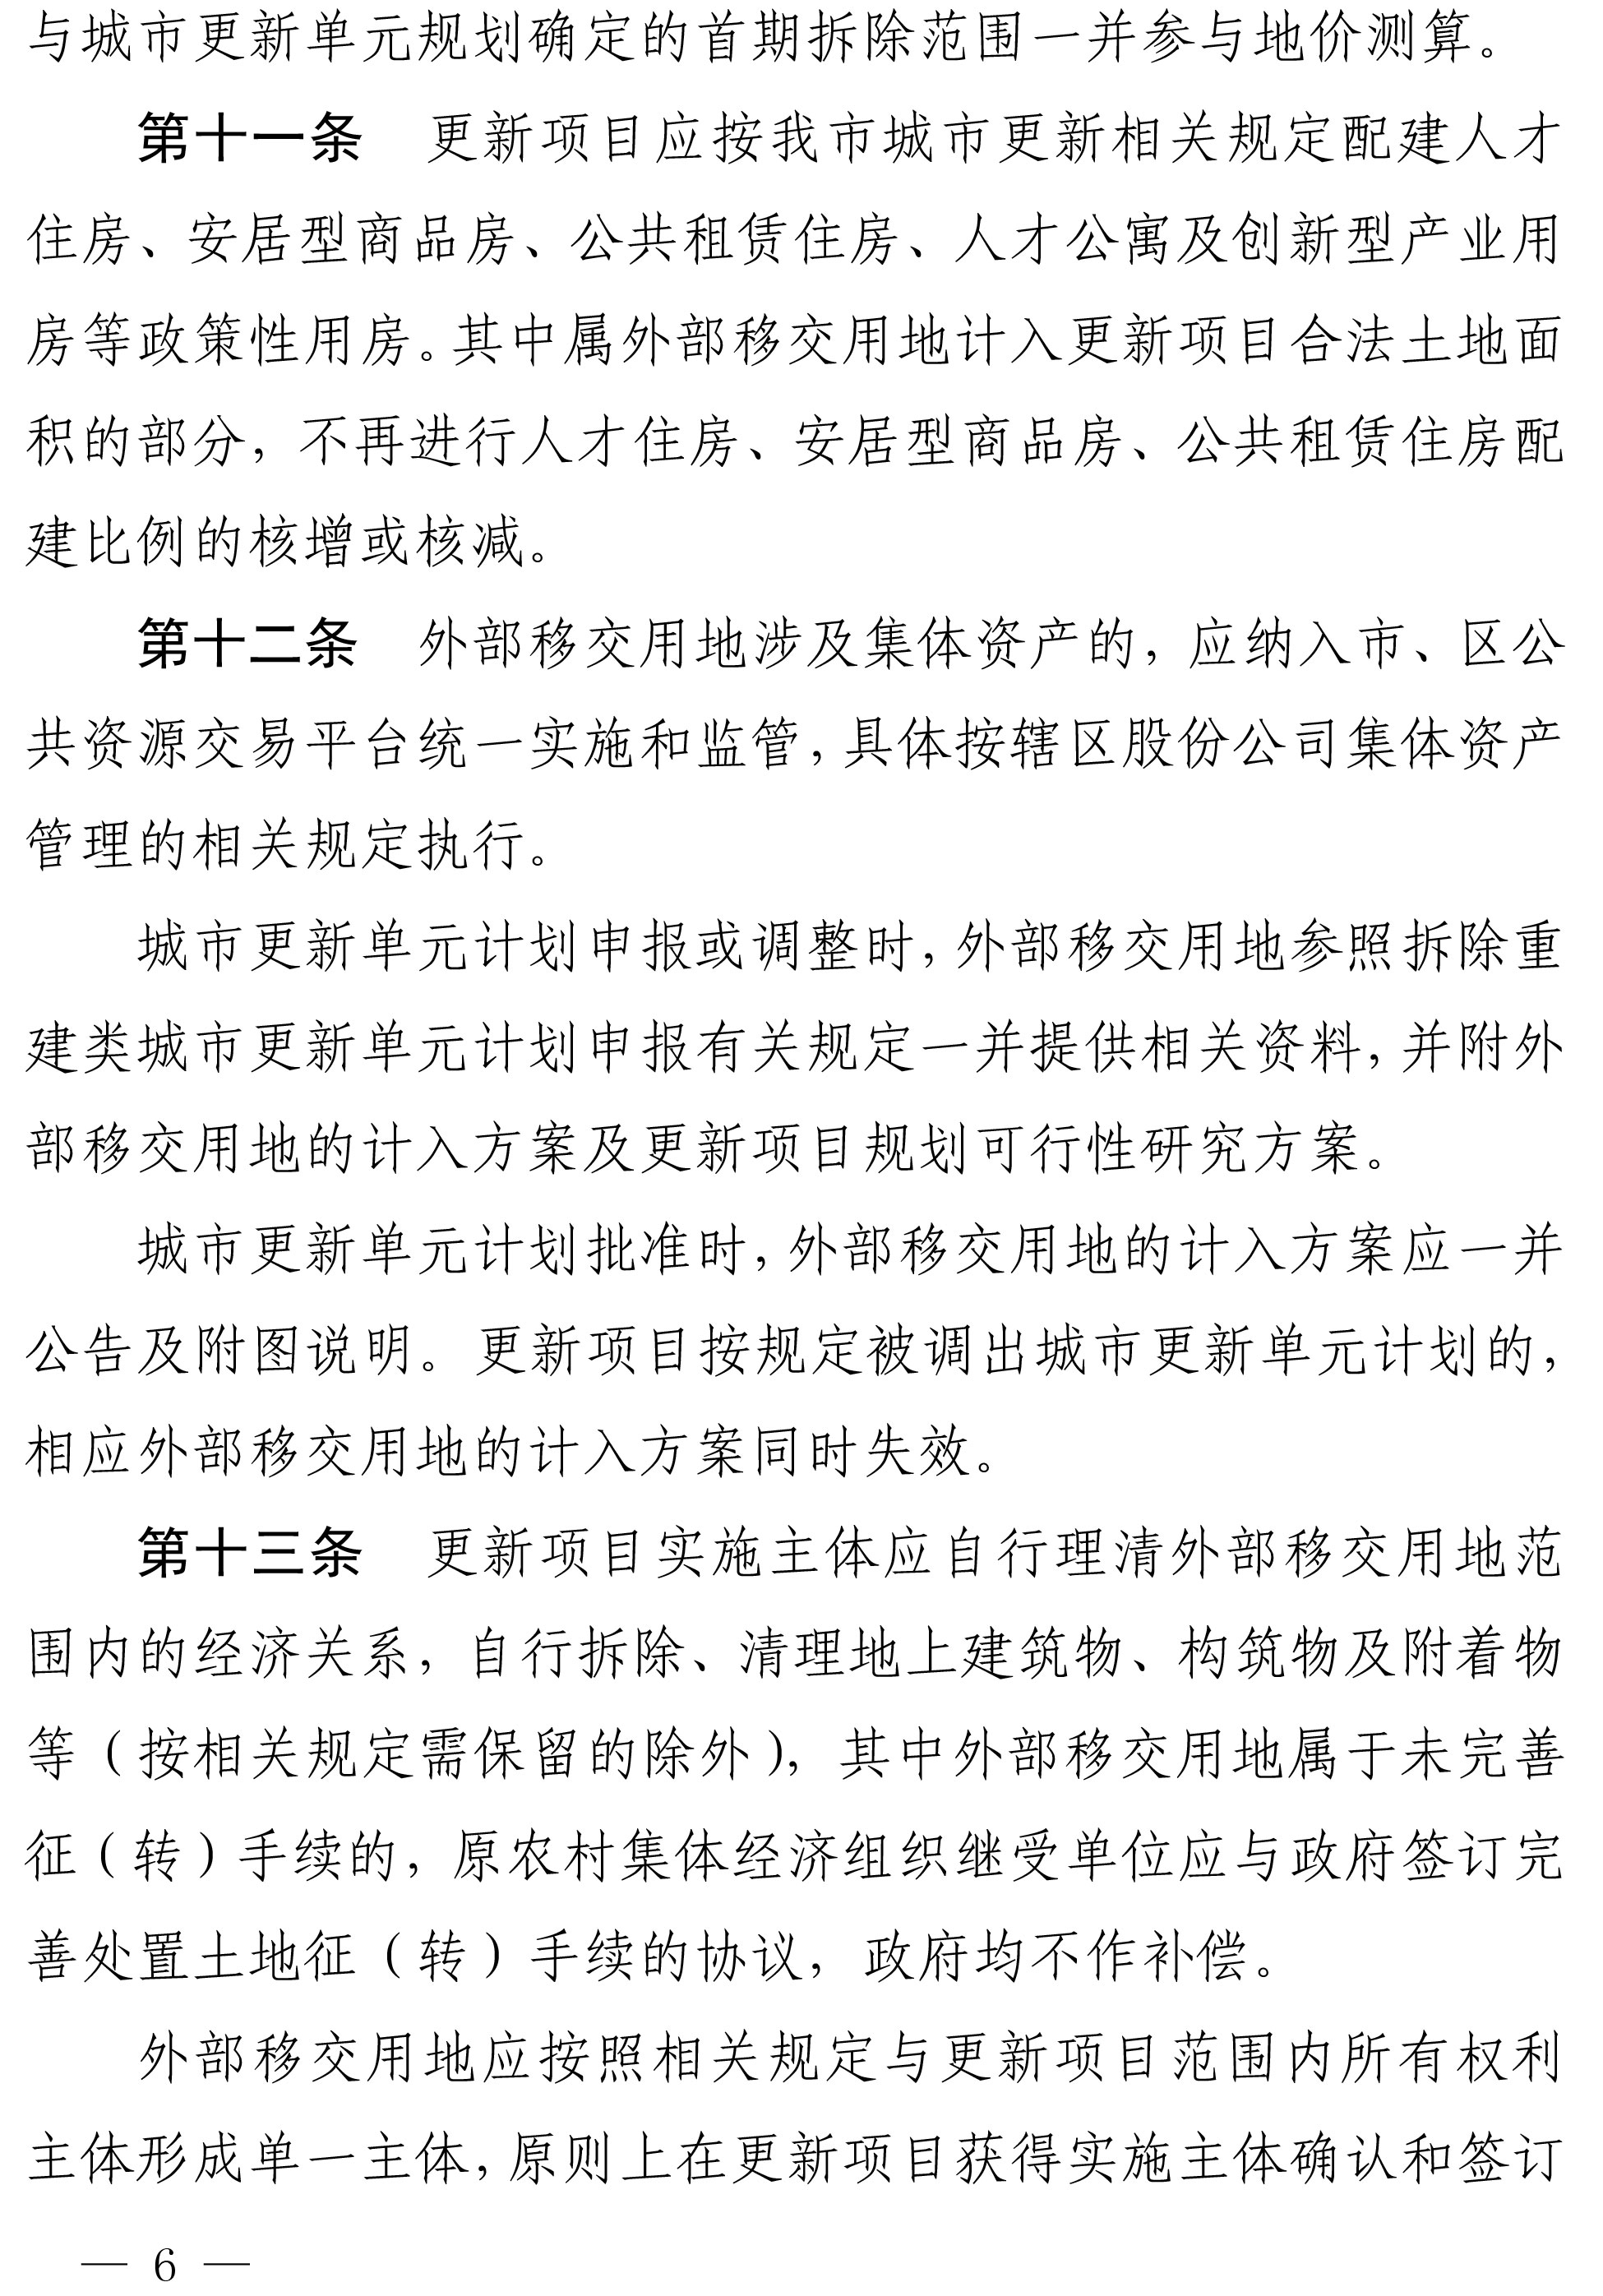 深圳市城市更新外部移交公共设施用地实施管理规定-6.jpg